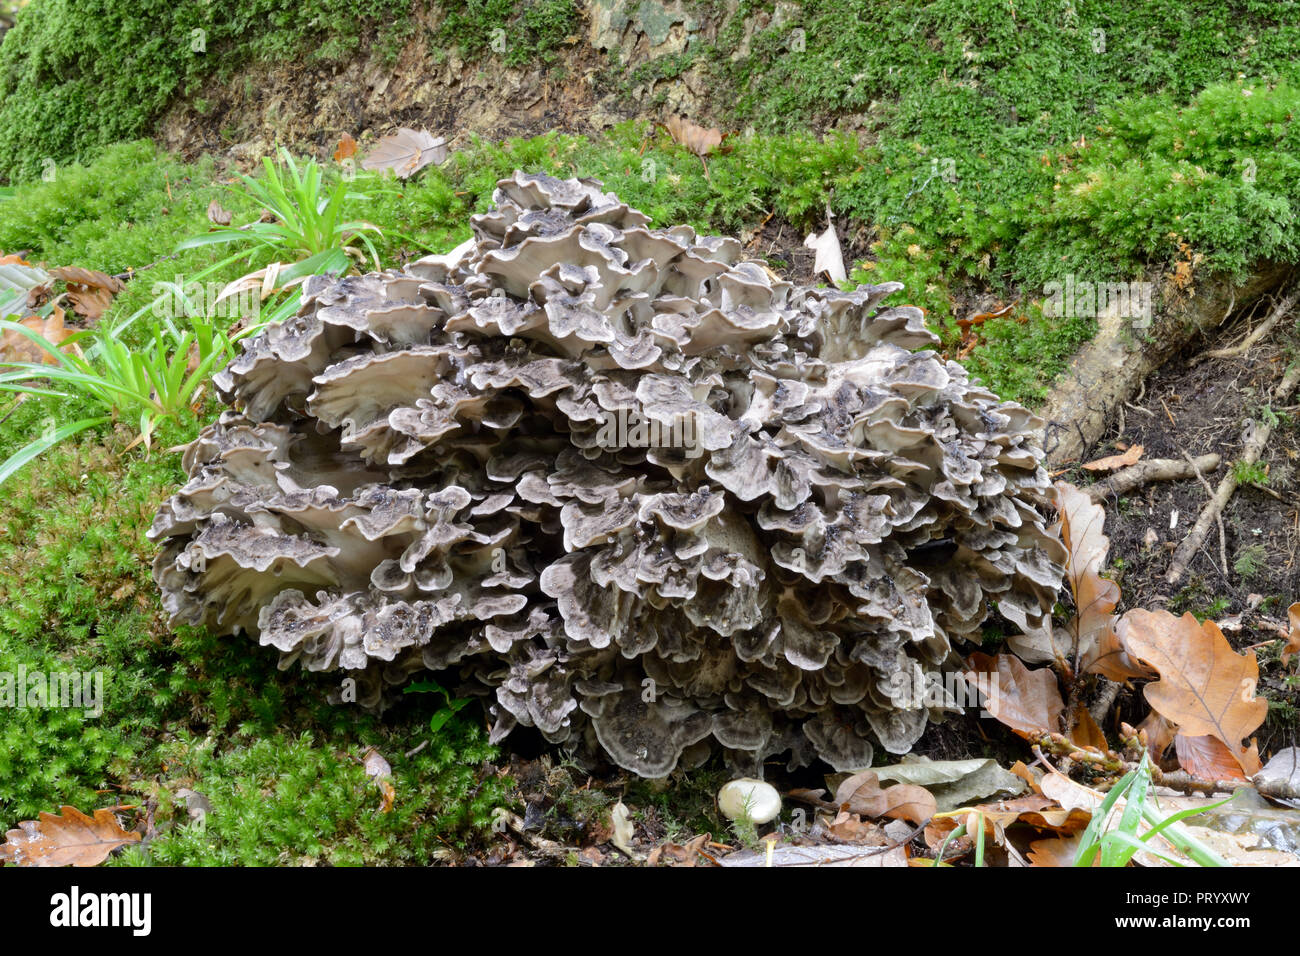 Grifola frondosa (comunemente conosciuto come la gallina di bosco) è un fungo polypore che cresce in grappoli alla base degli alberi, generalmente rovere. Foto Stock